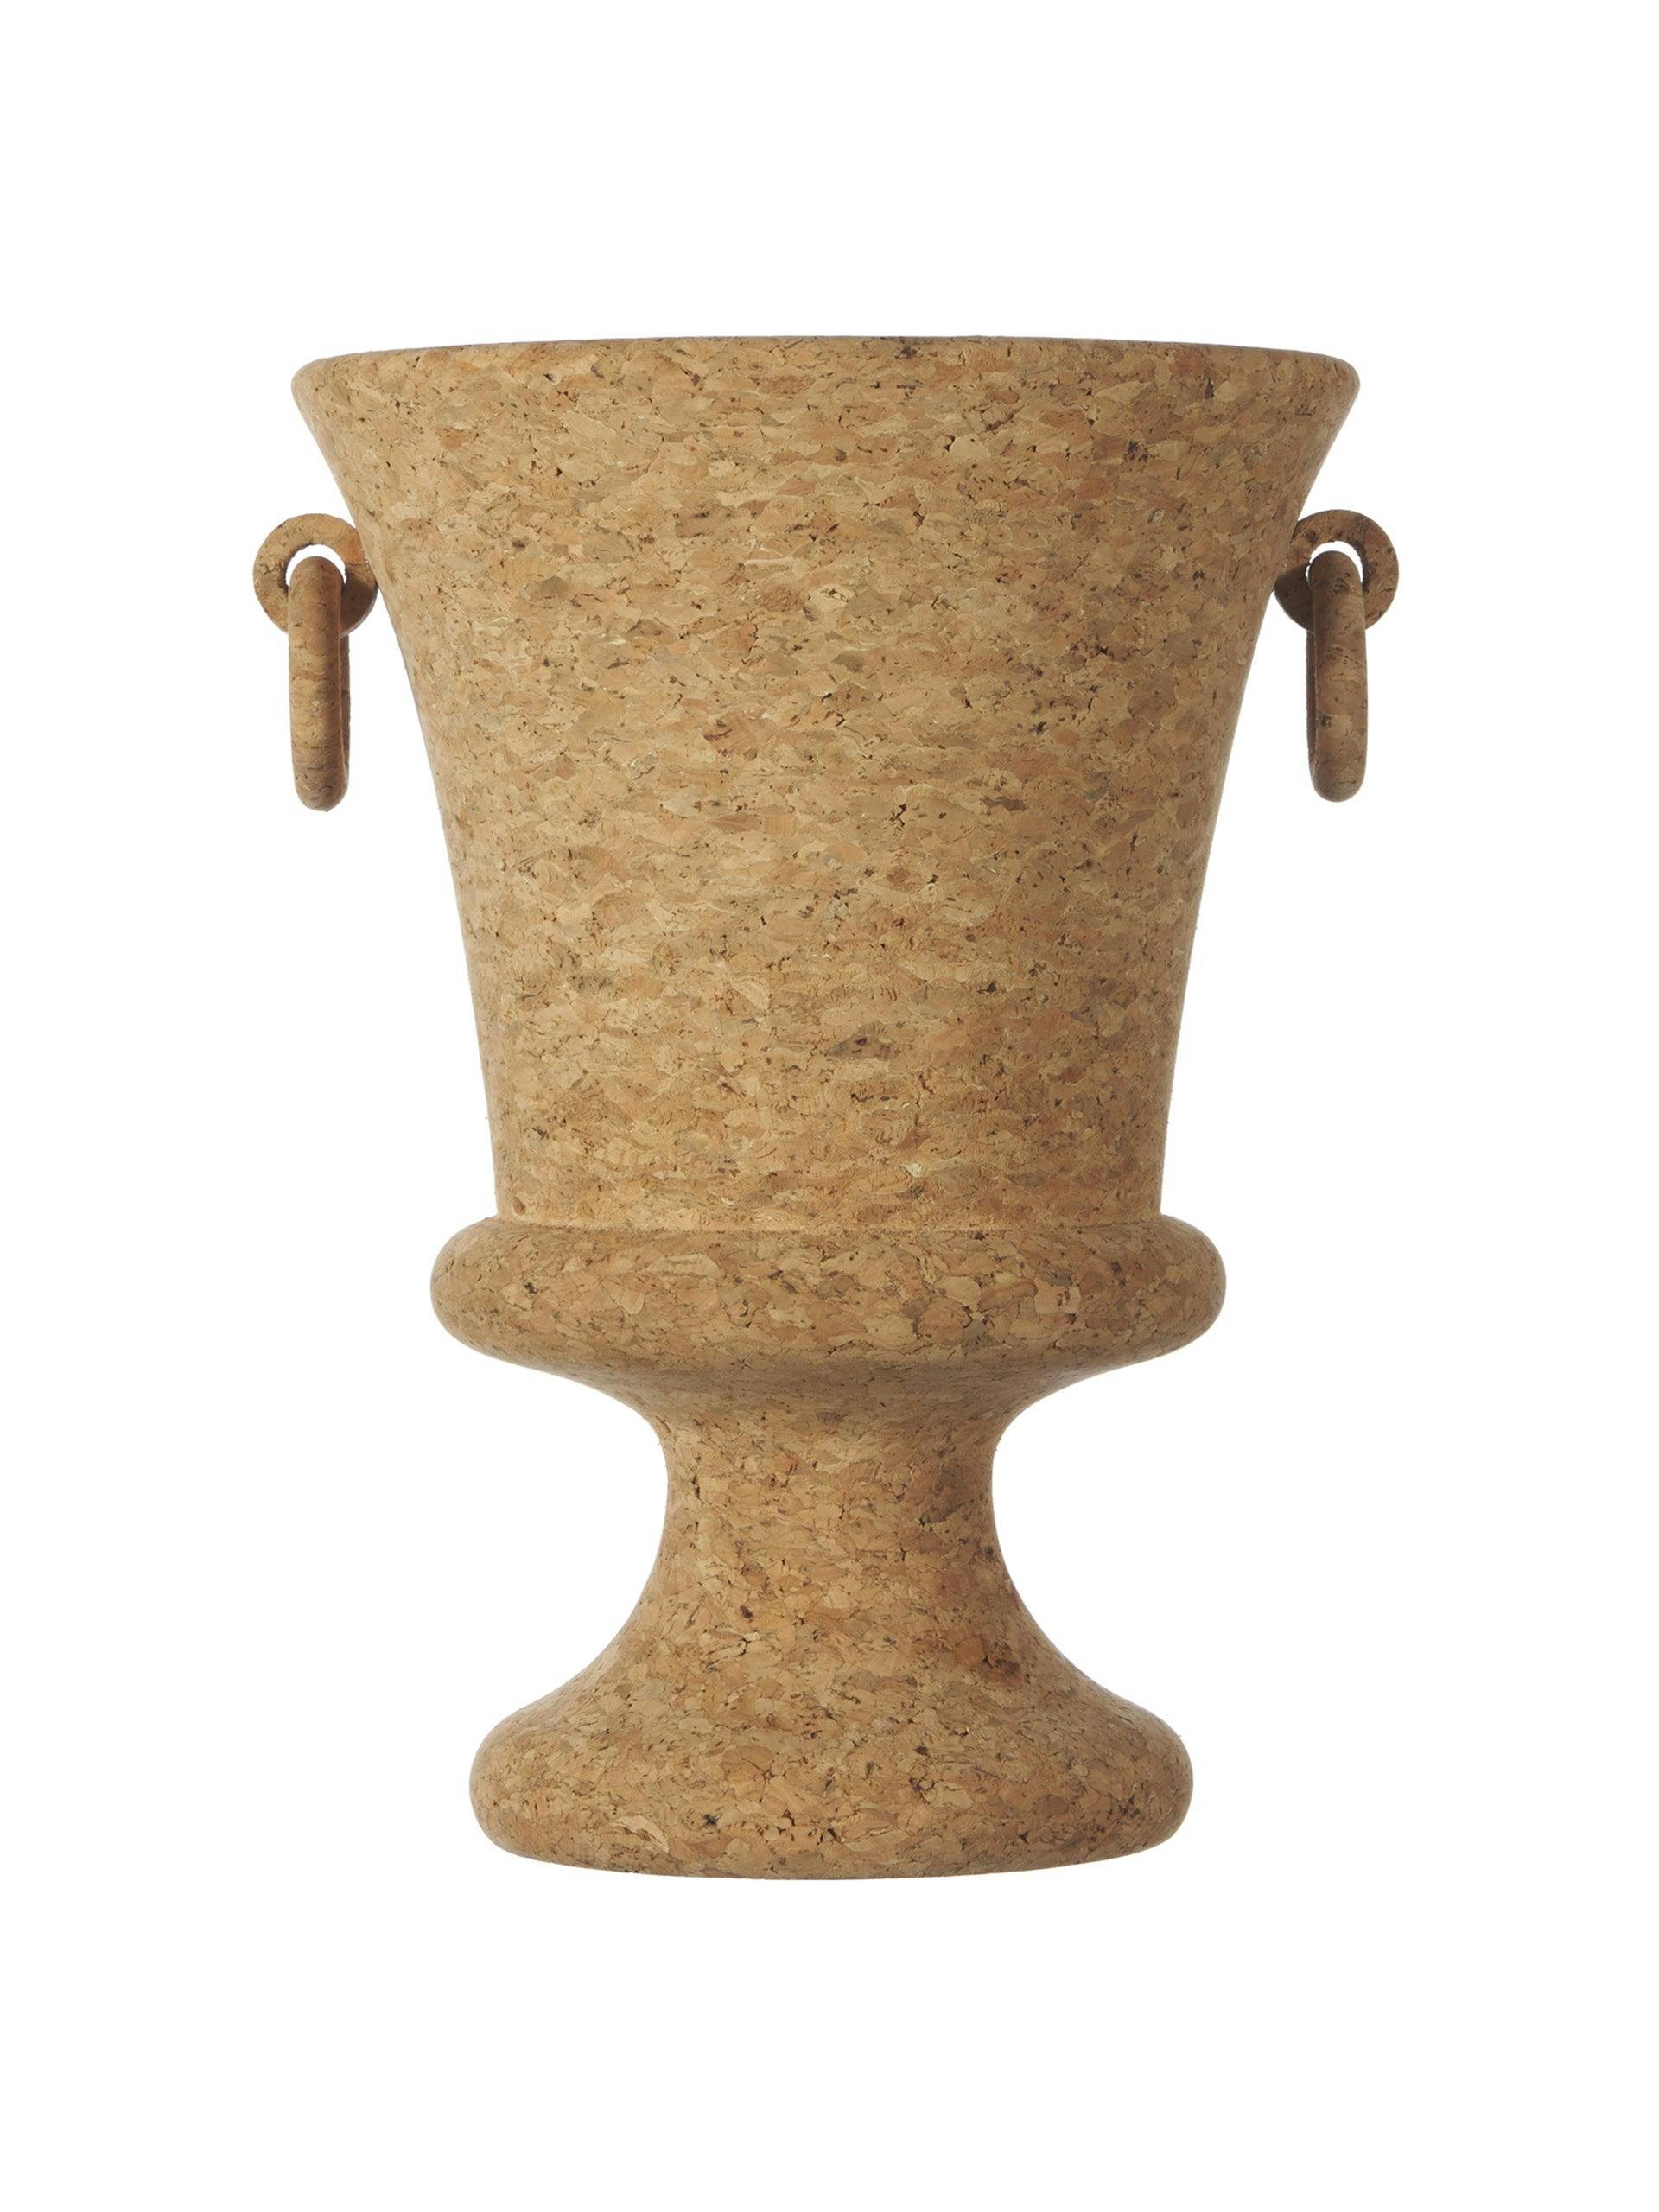 Handmade cork urn